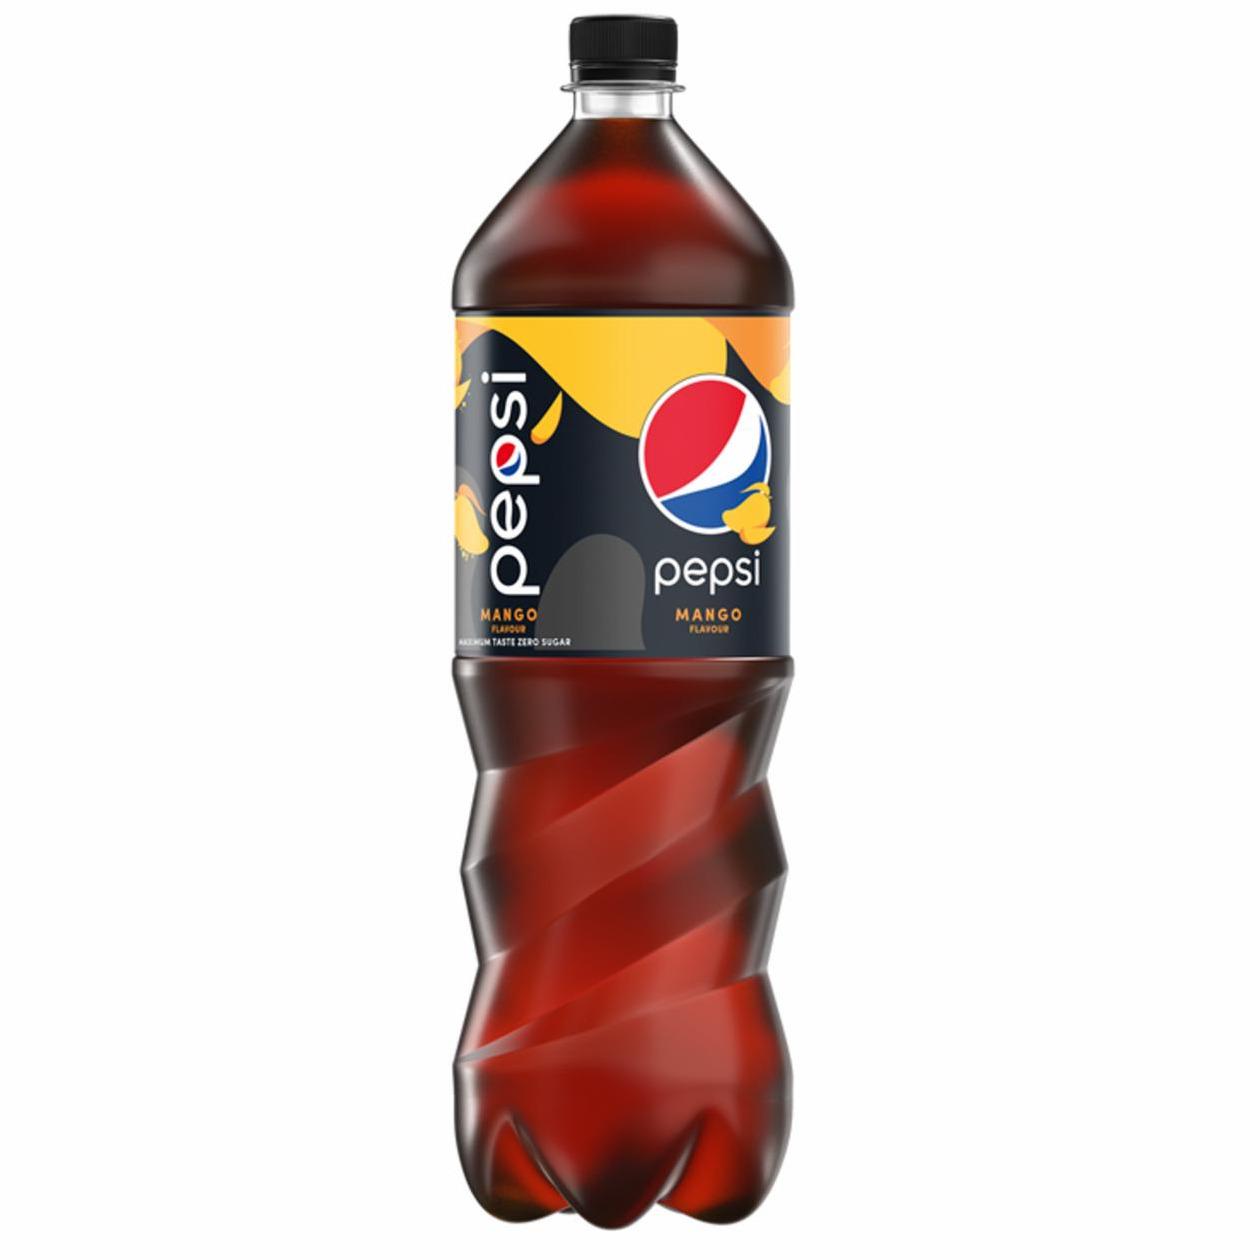 Zdjęcia - Pepsi-Cola Zero cukru Napój gazowany typu cola o smaku mango 1,5 l